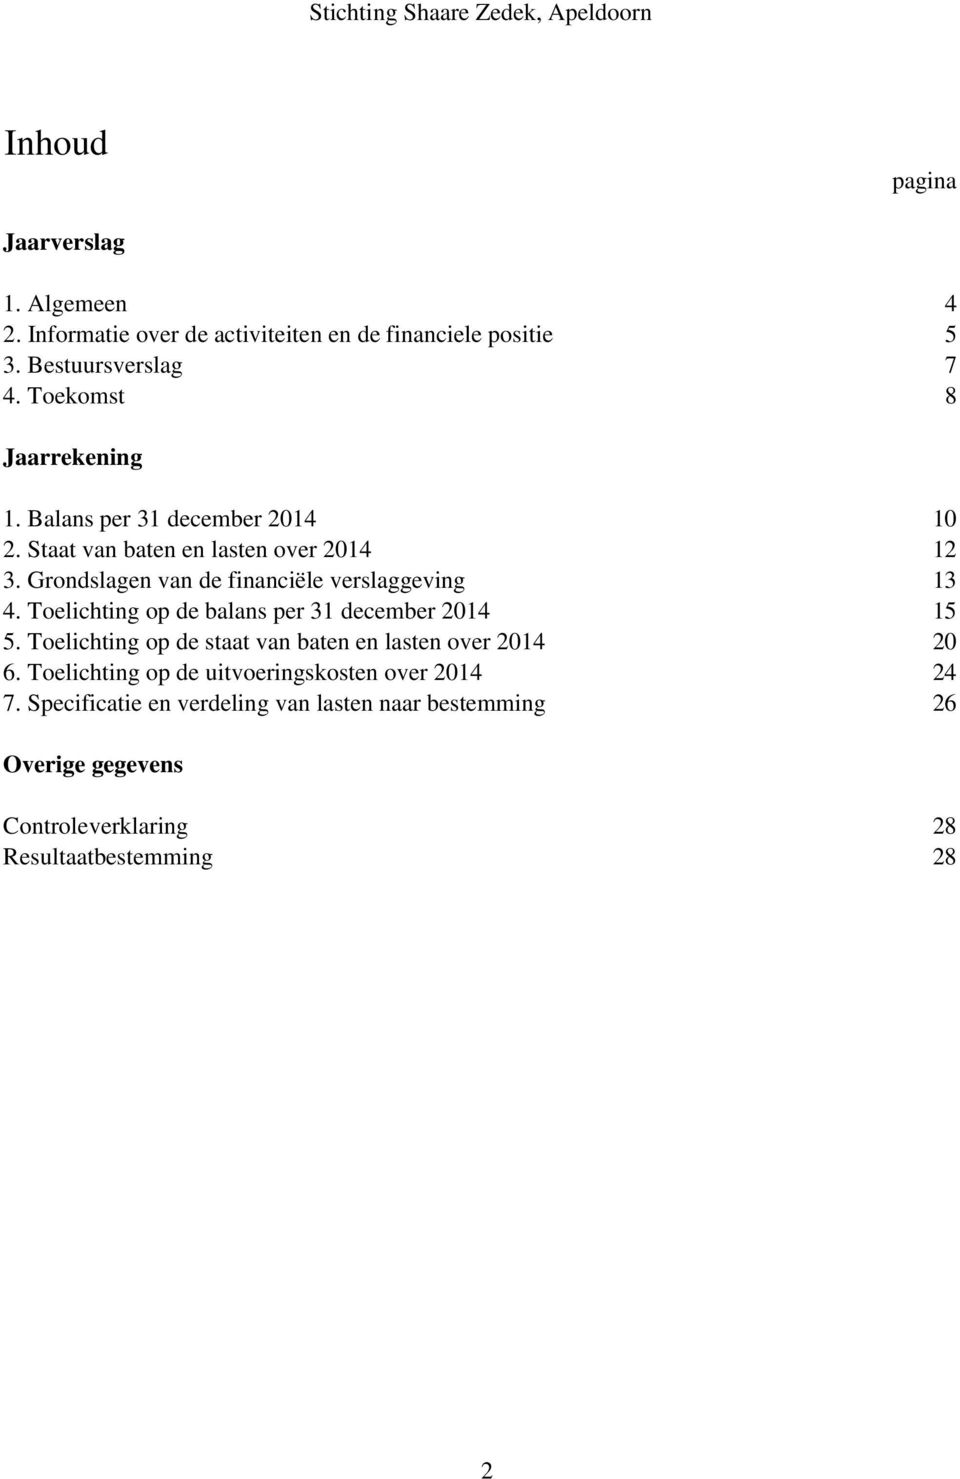 Grondslagen van de financiële verslaggeving 13 4. Toelichting op de balans per 31 december 2014 15 5.